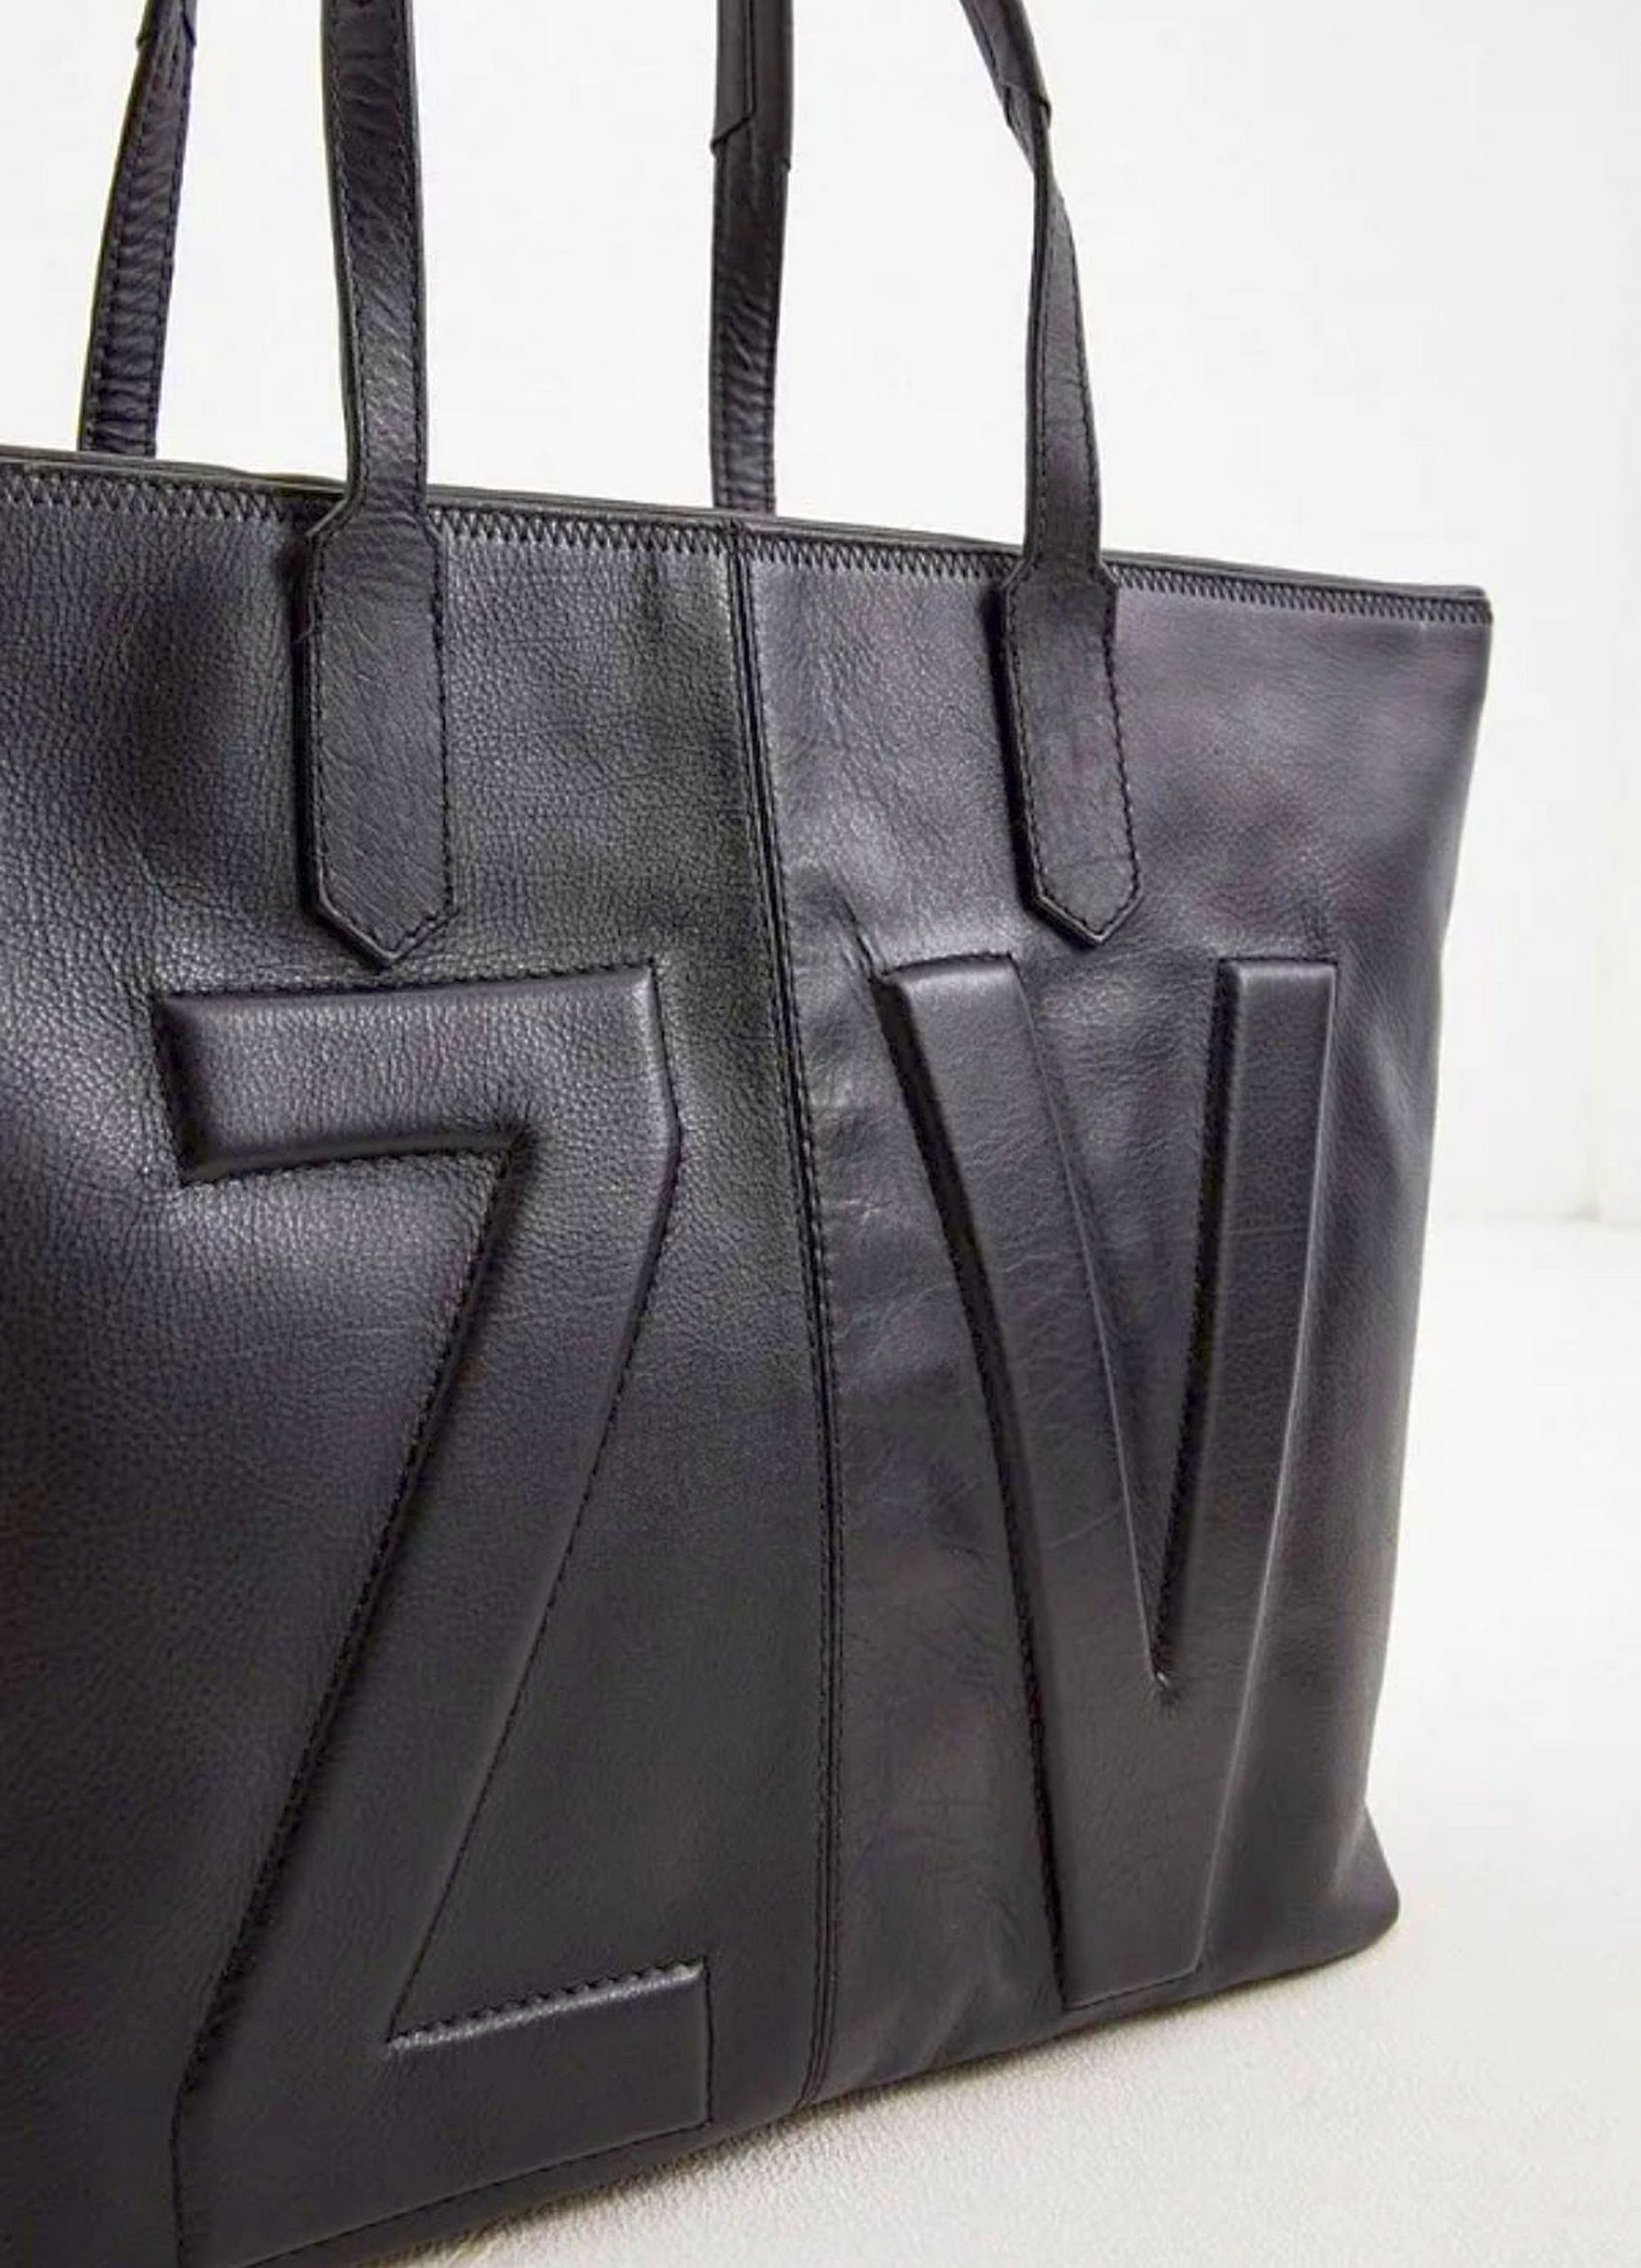 Неделя моды: Zadig & Voltaire представит свои сумки в Нью-Йорке